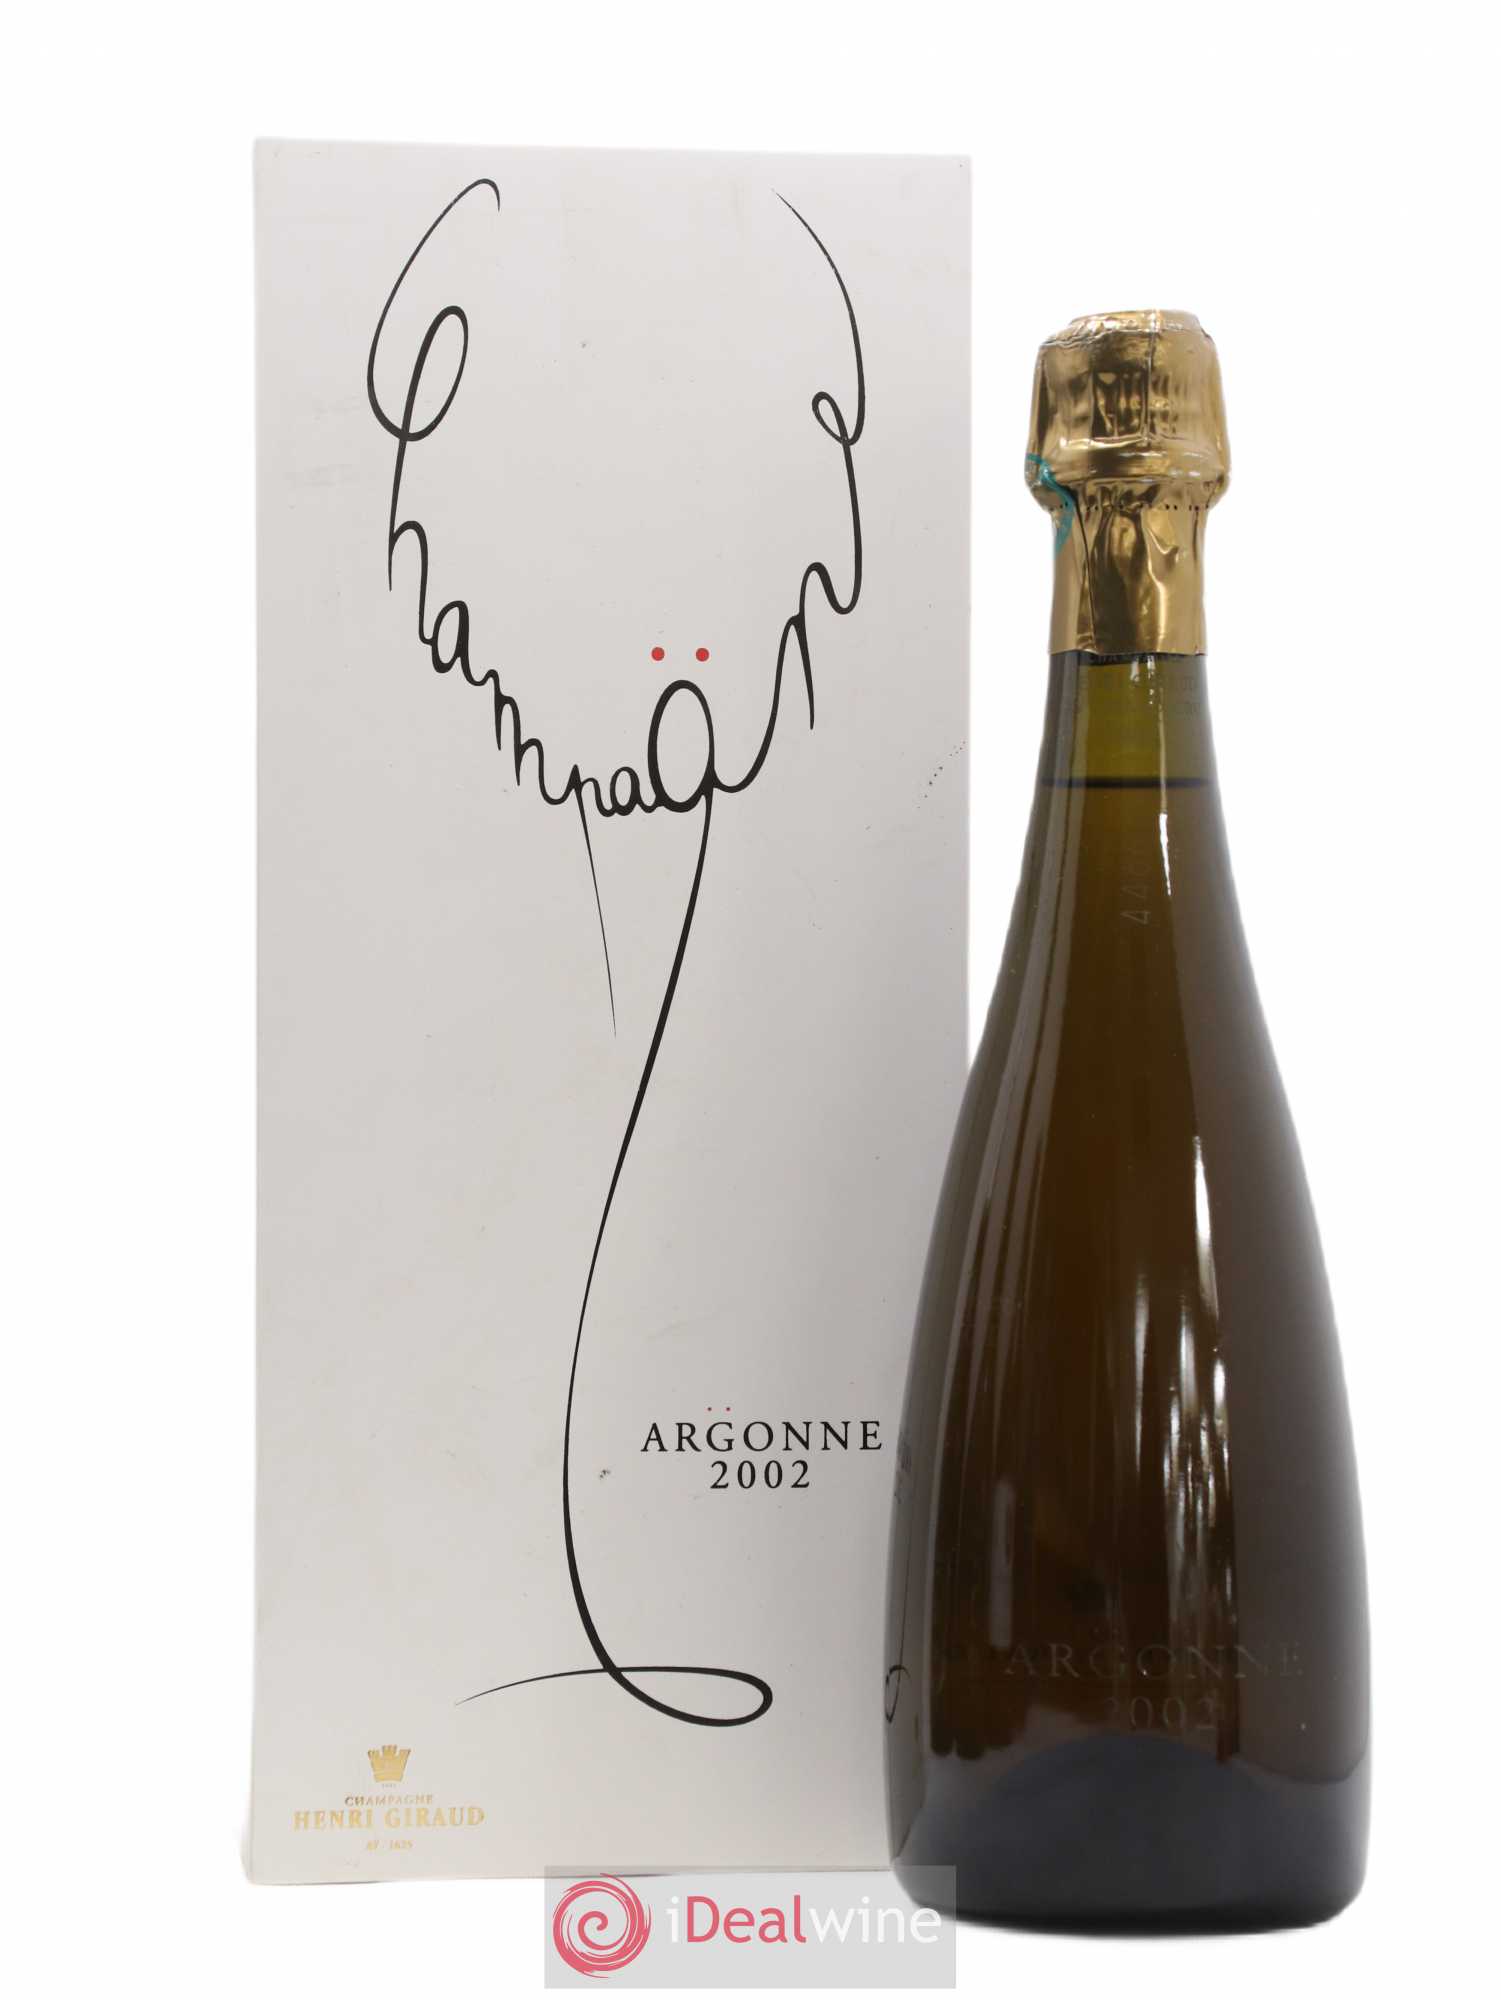 アンリジロー アルゴンヌ 2002 Argonne Henri Giraud - シャンパン